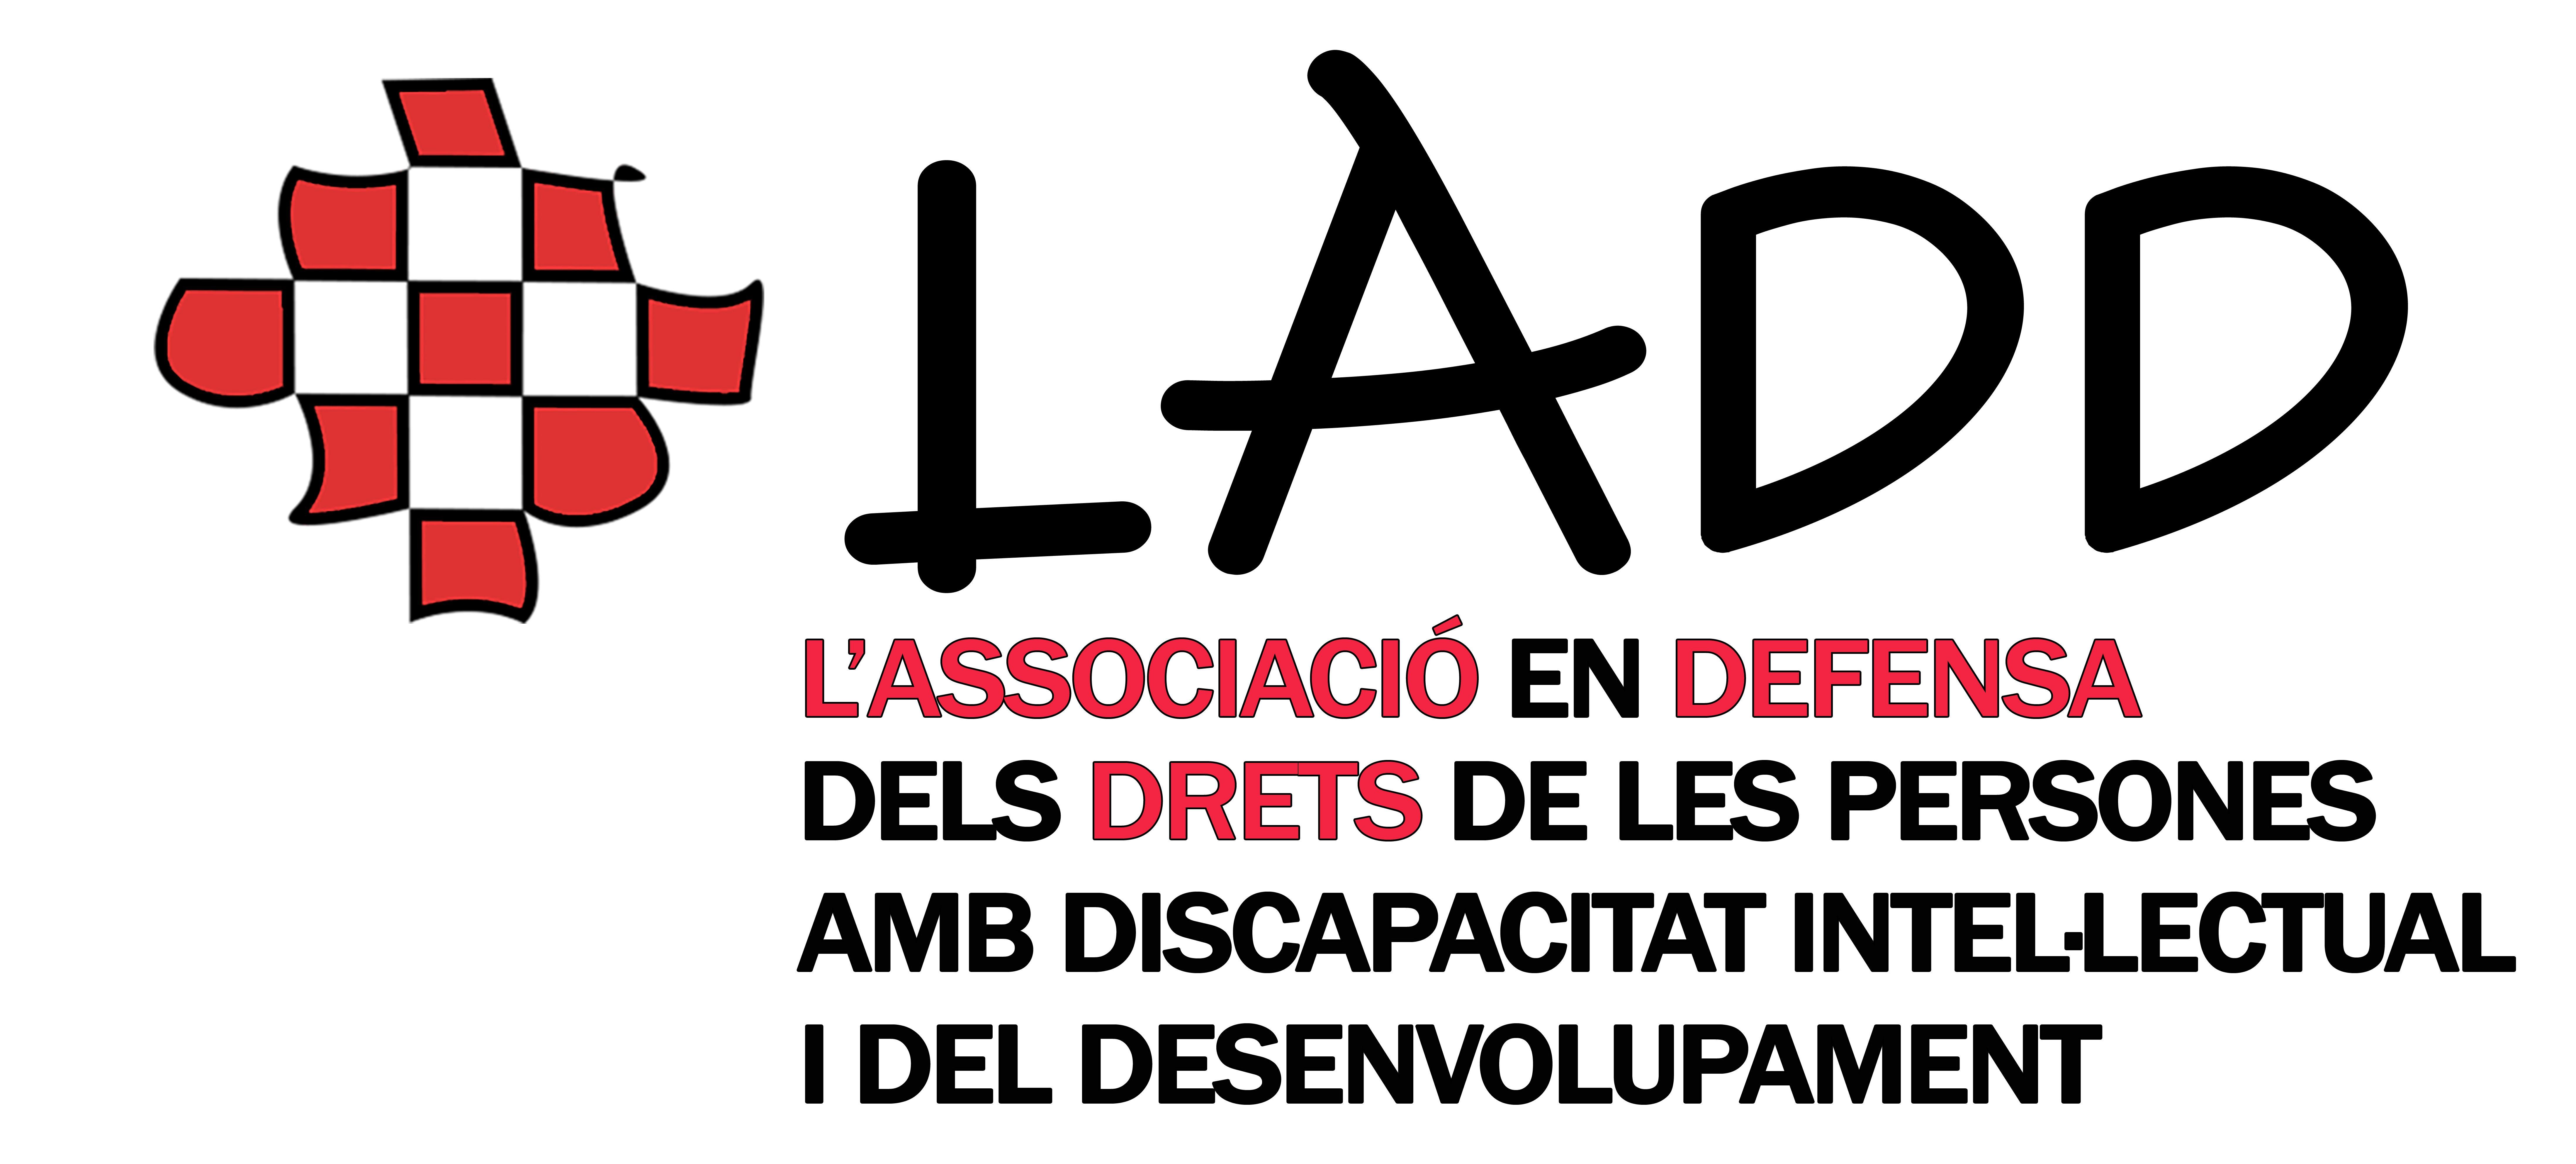 Ladd Logo - File:Logo LADD.jpg - Wikimedia Commons